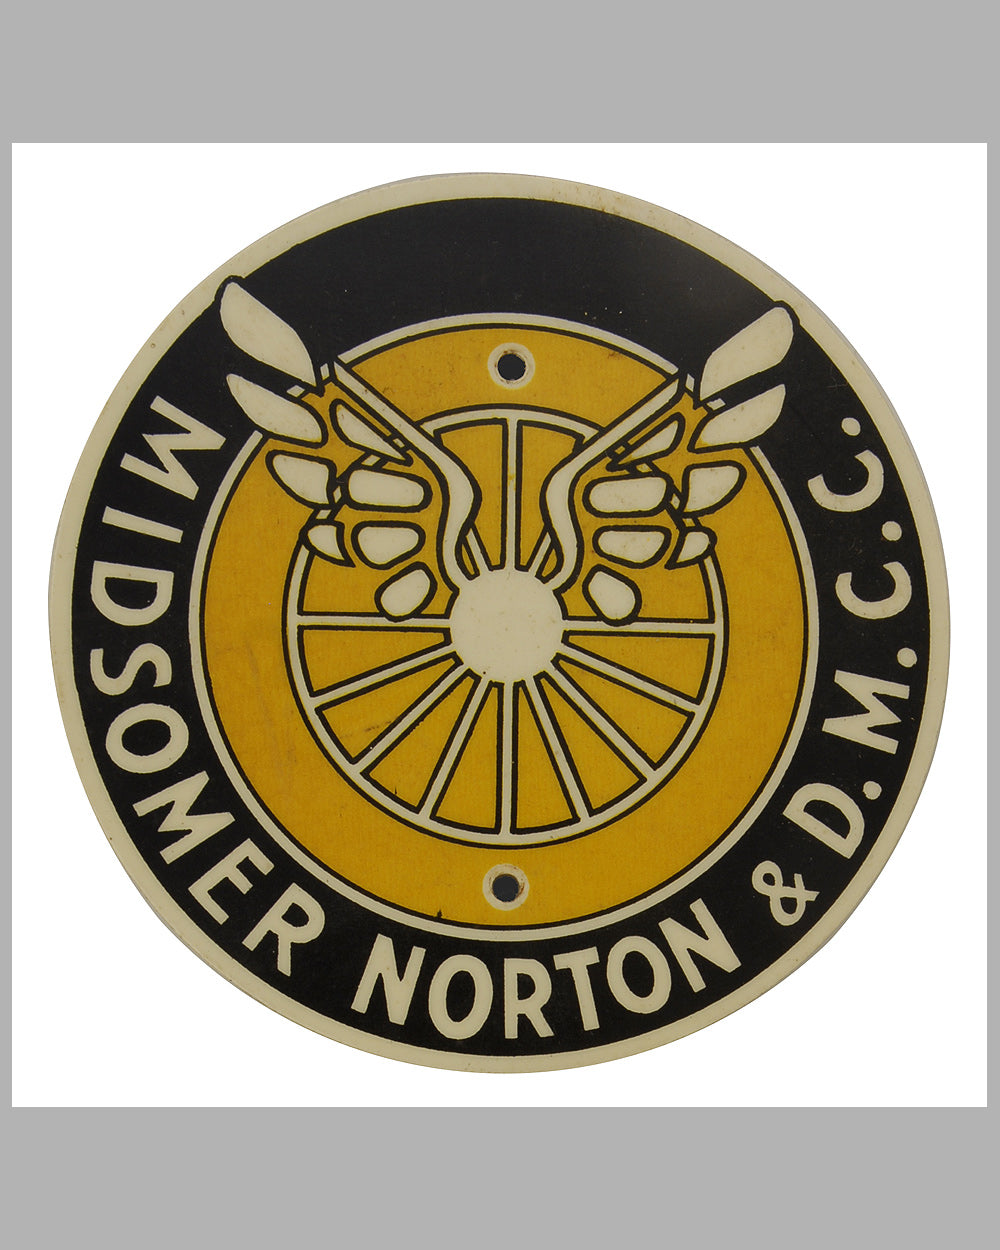 Midsomer Norton & D.M.C.C. Member’s badge